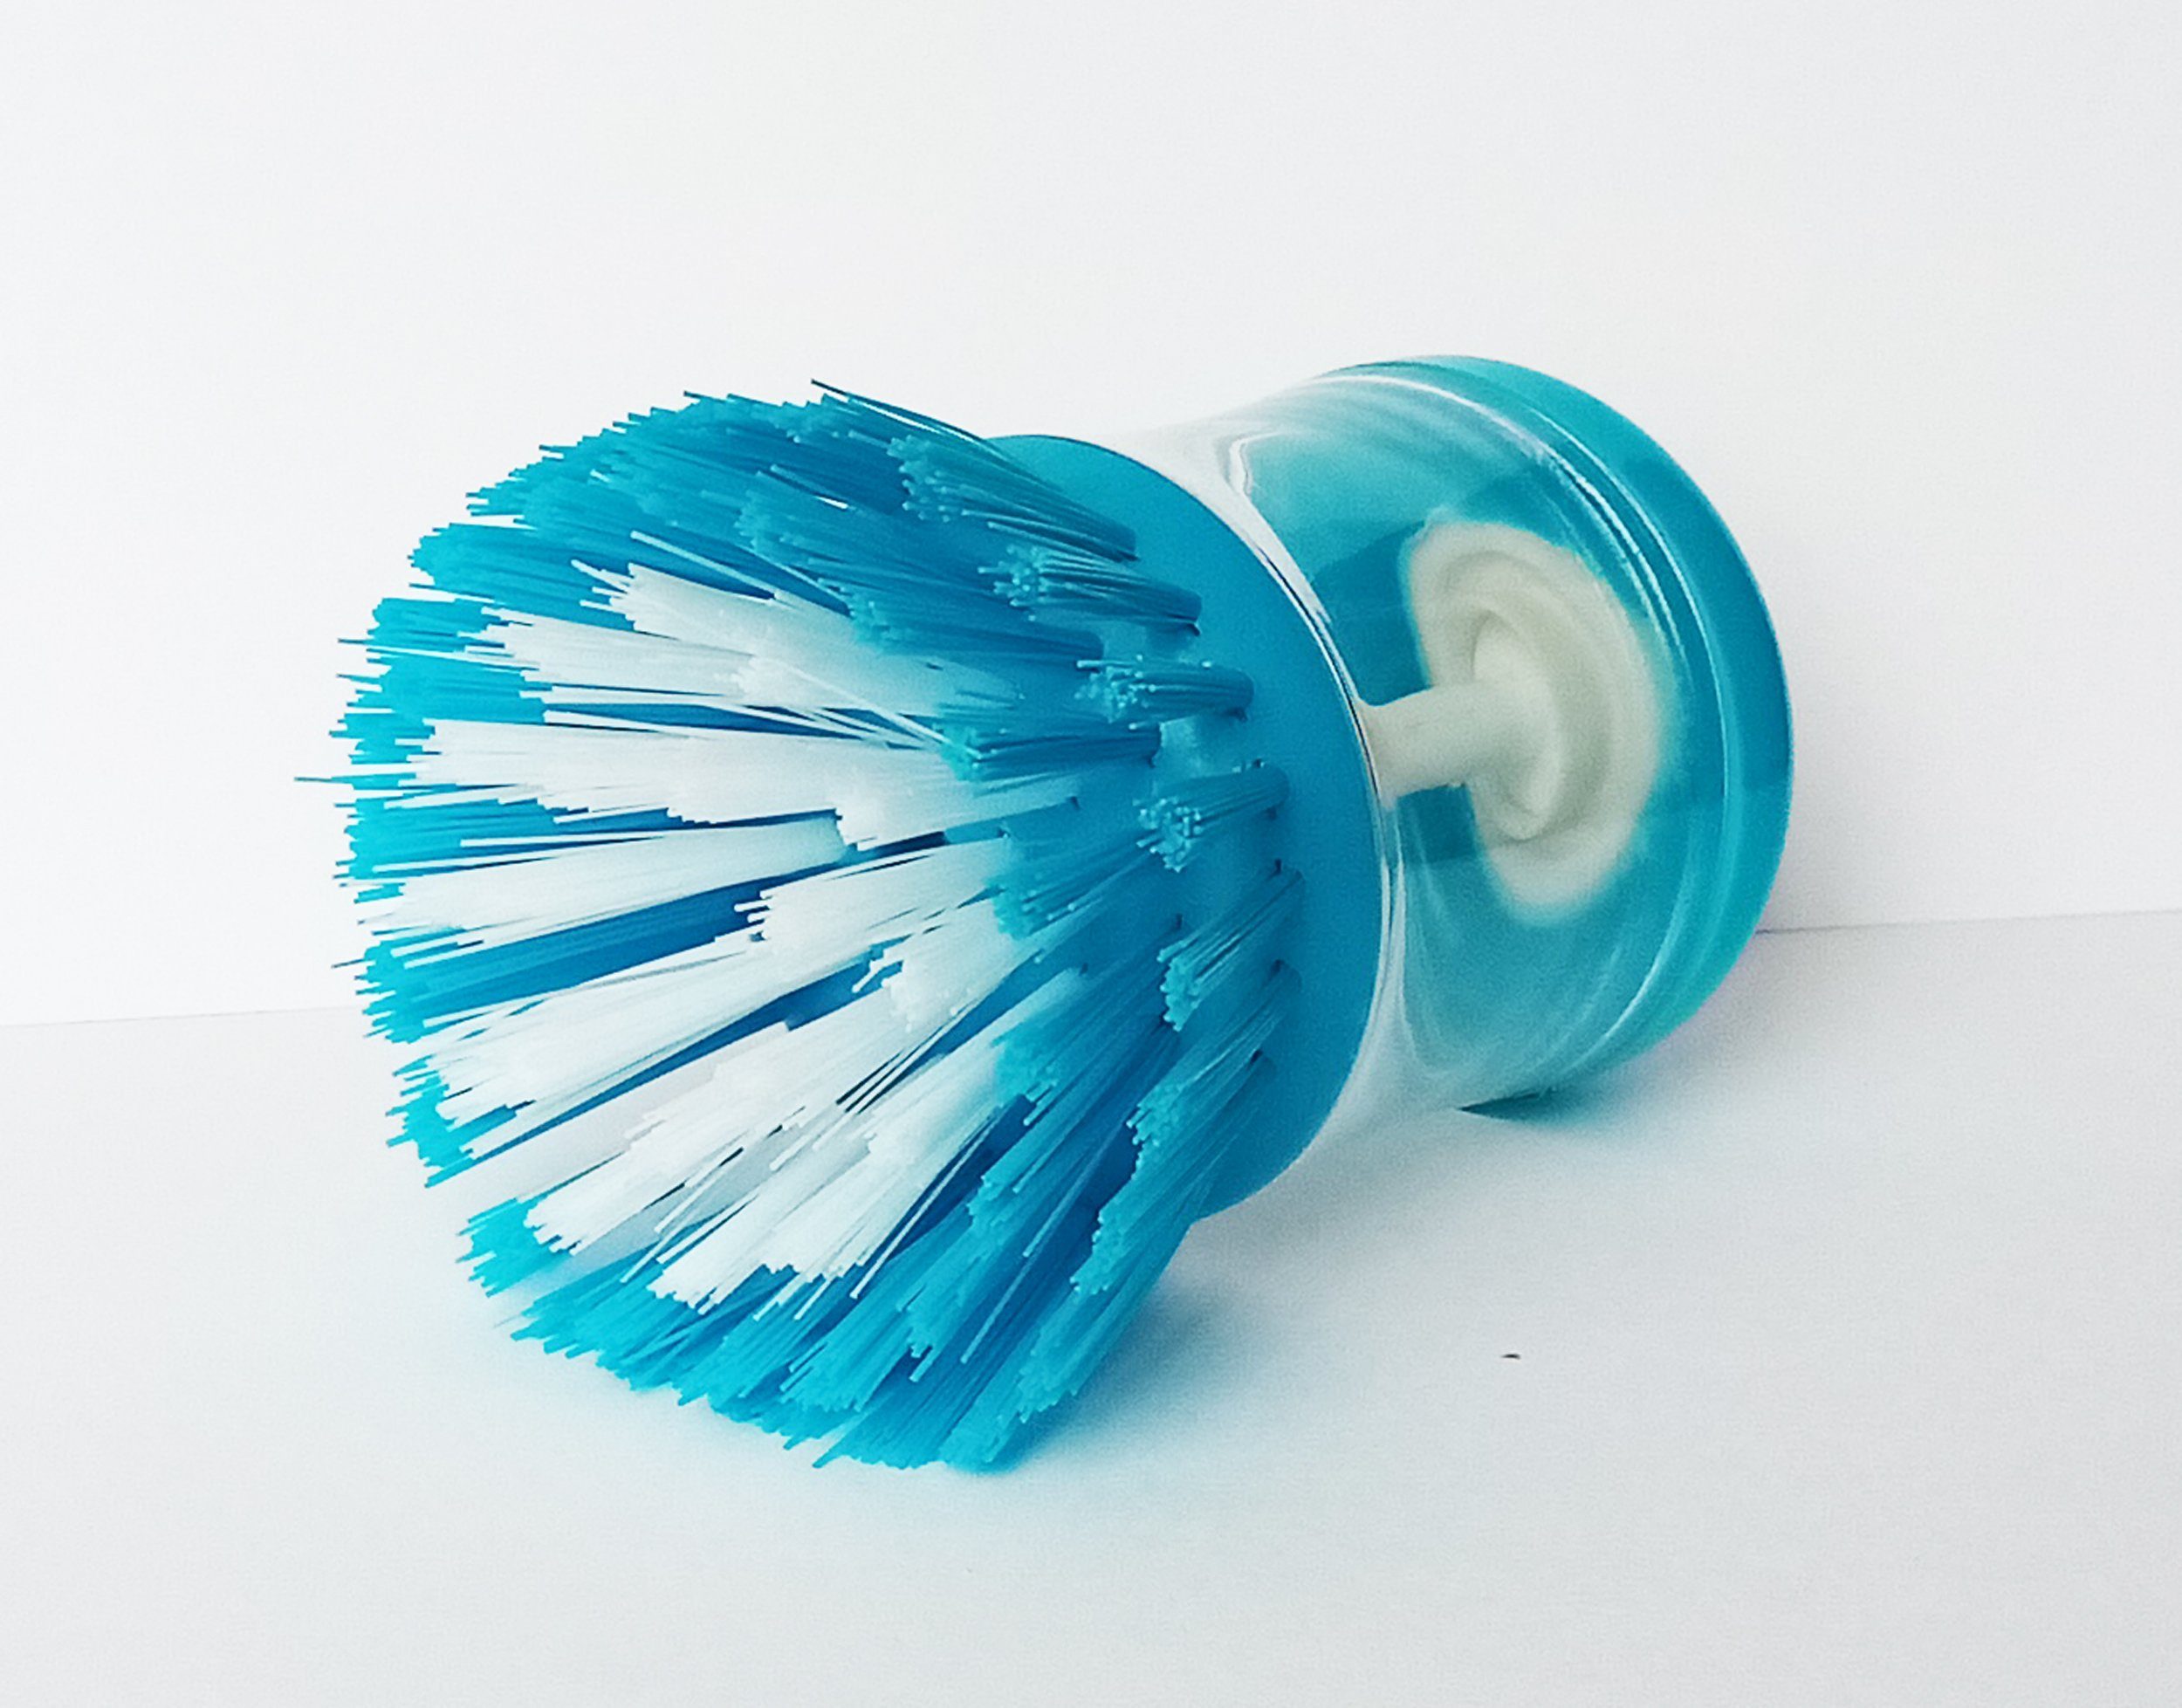 Reinigungsbürste SPÜLBÜRSTE mit Spülmittelbehälter 98 (Blau), Bürste Geschirrbürste Spülschwamm Topfbürste